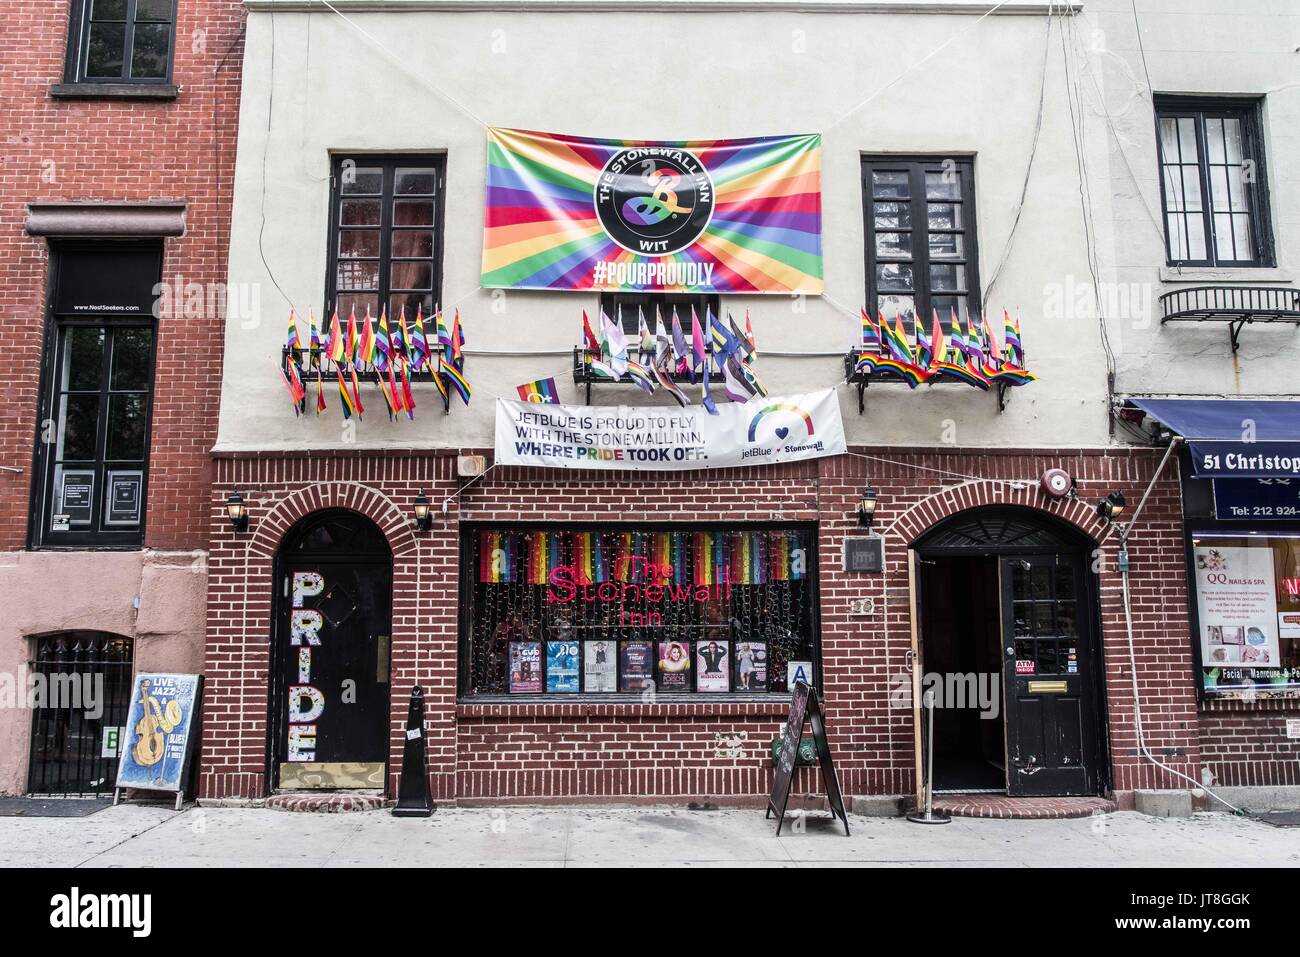 La Ciudad de Nueva York, Nueva York, Estados Unidos. 6 ago, 2017. Esquina de Stonewall Place, cerca del Stonewall Inn, donde las revueltas tuvo lugar en junio de 1969 debido a la presunta persecución a las redadas. Las protestas en Greenwich Village son consideradas las primeras protestas por los derechos gay pride y donde el movimiento comenzó. Más recientemente, en febrero de 2017, una protesta contra la prohibición de musulmanes y contra los ataques contra la comunidad LGBTQ resultó en arrestos de activistas conocido como la ''Stonewall 4''. Su juicio tuvo lugar el 07 de agosto de 2017. Crédito: Sachelle Babbar/Zuma alambre/Alamy Live News Foto de stock